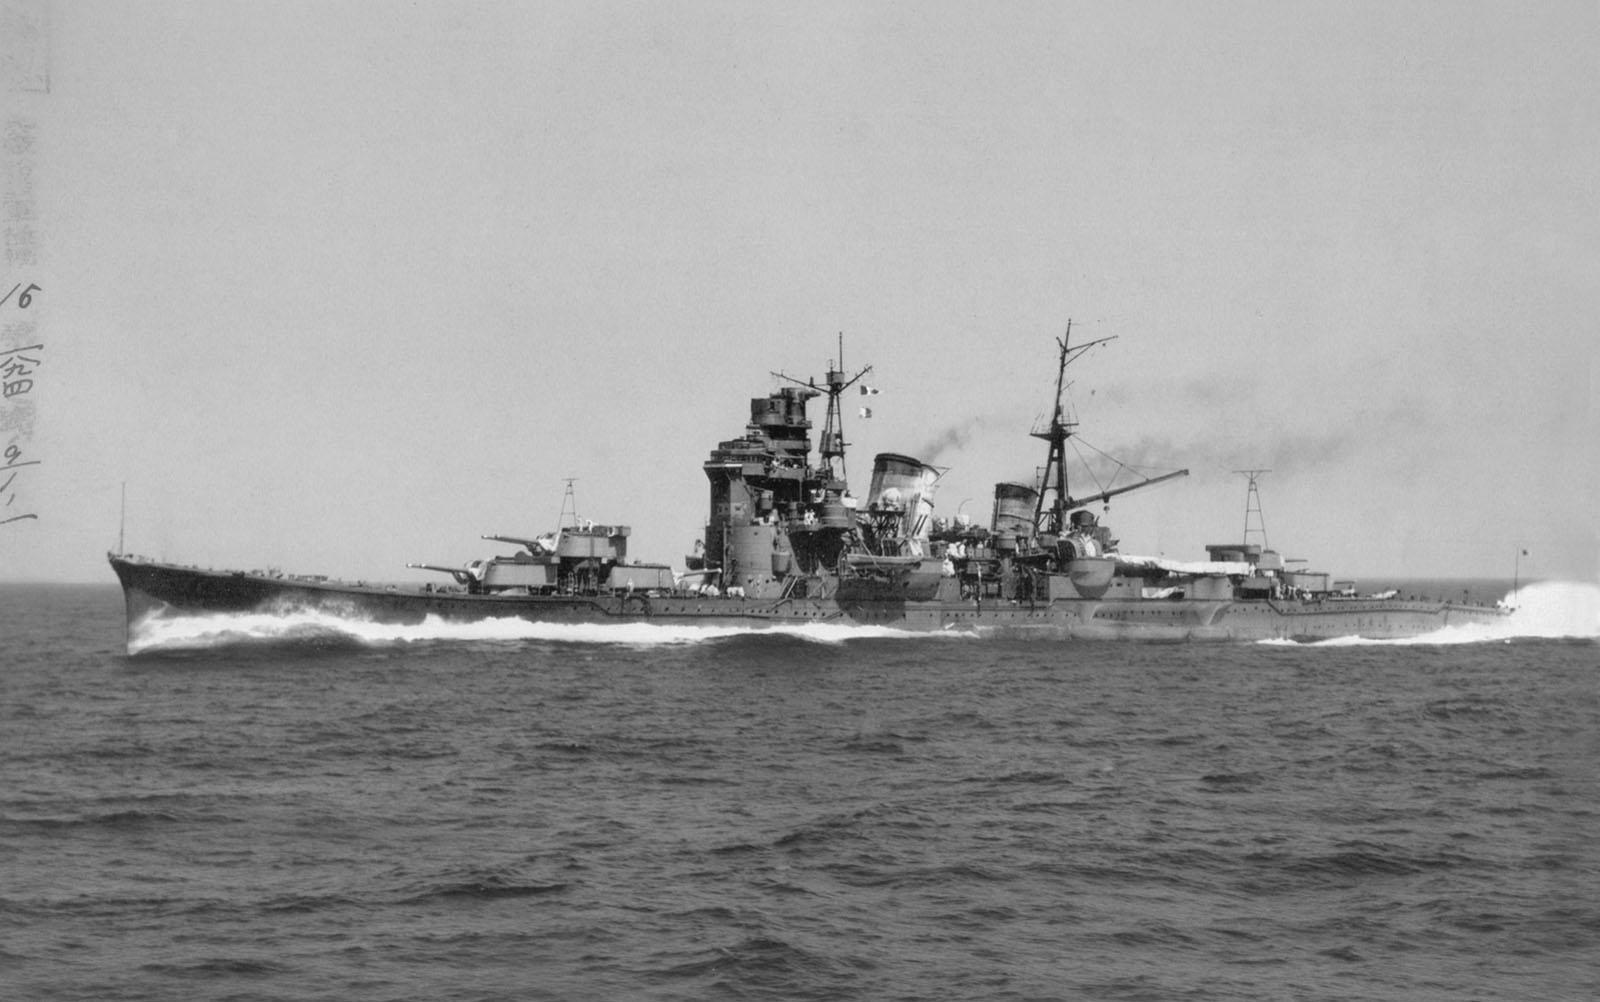 IJN Myoko post-reconstruction in sea trials, 1941